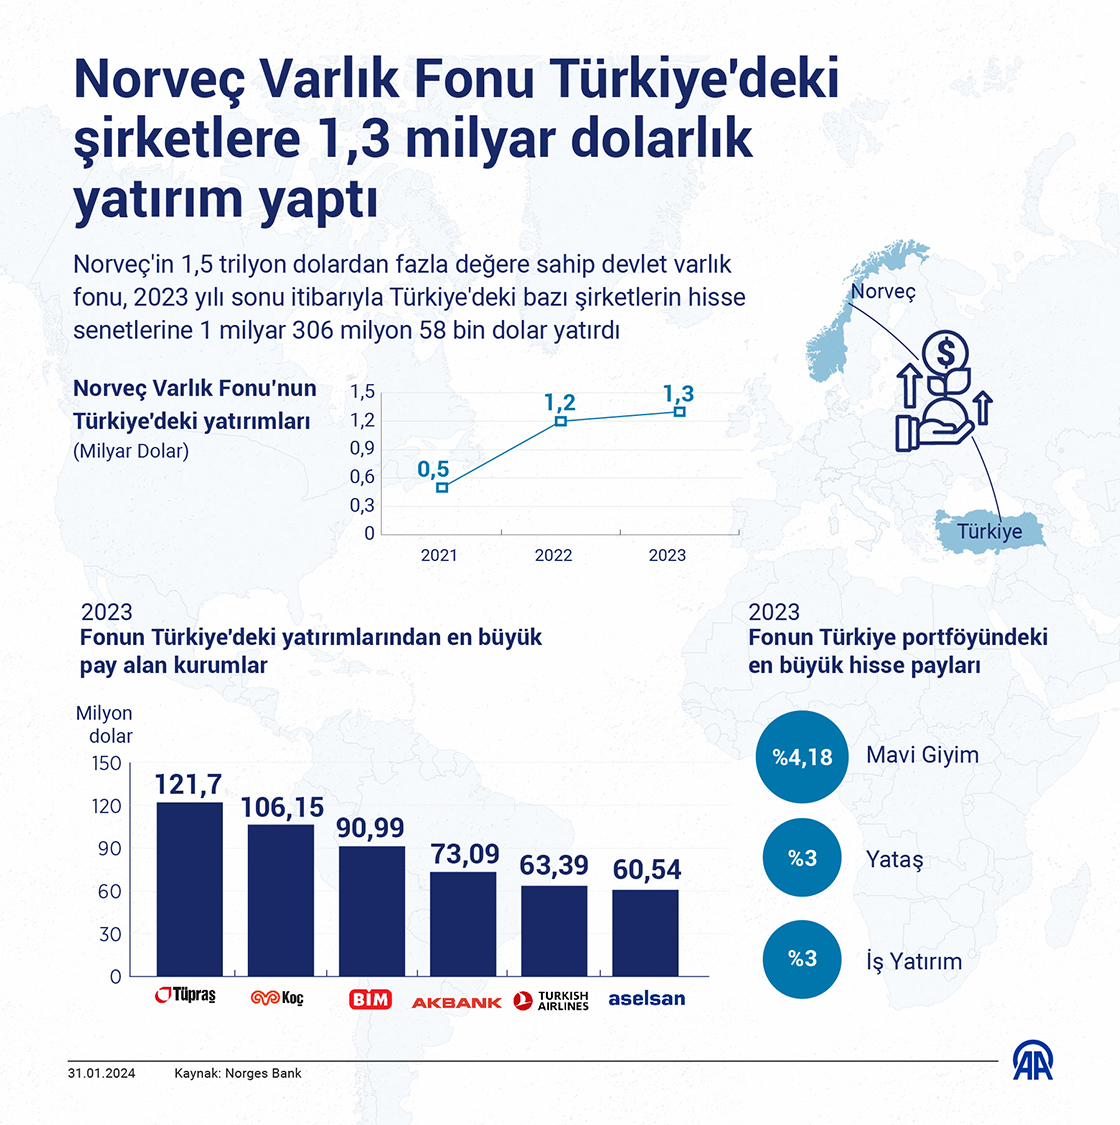 Norveç Varlık Fonu Türkiye'deki şirketlere 1,3 milyar dolarlık yatırım yaptı